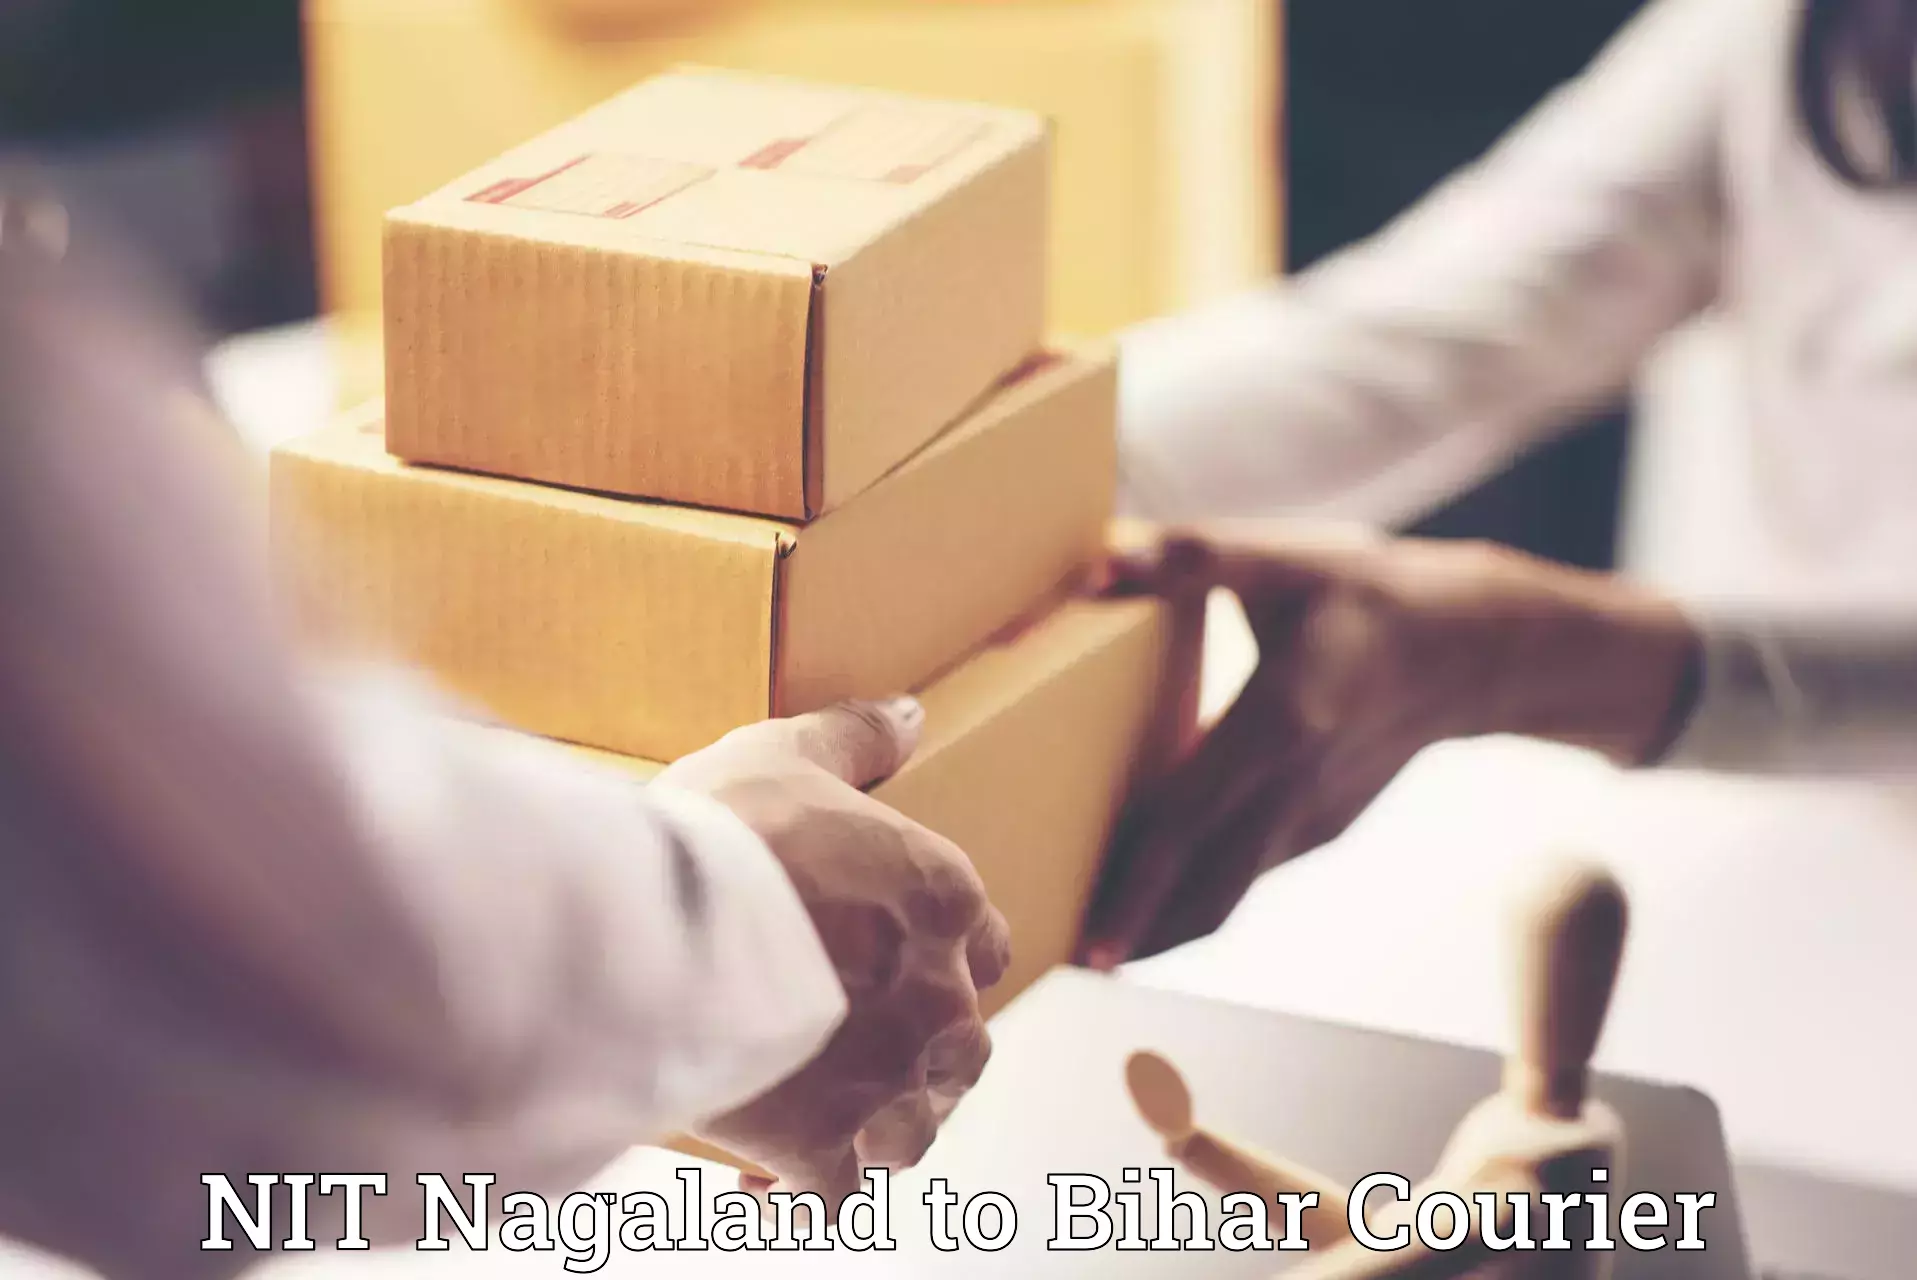 Furniture transport and logistics NIT Nagaland to Bihar